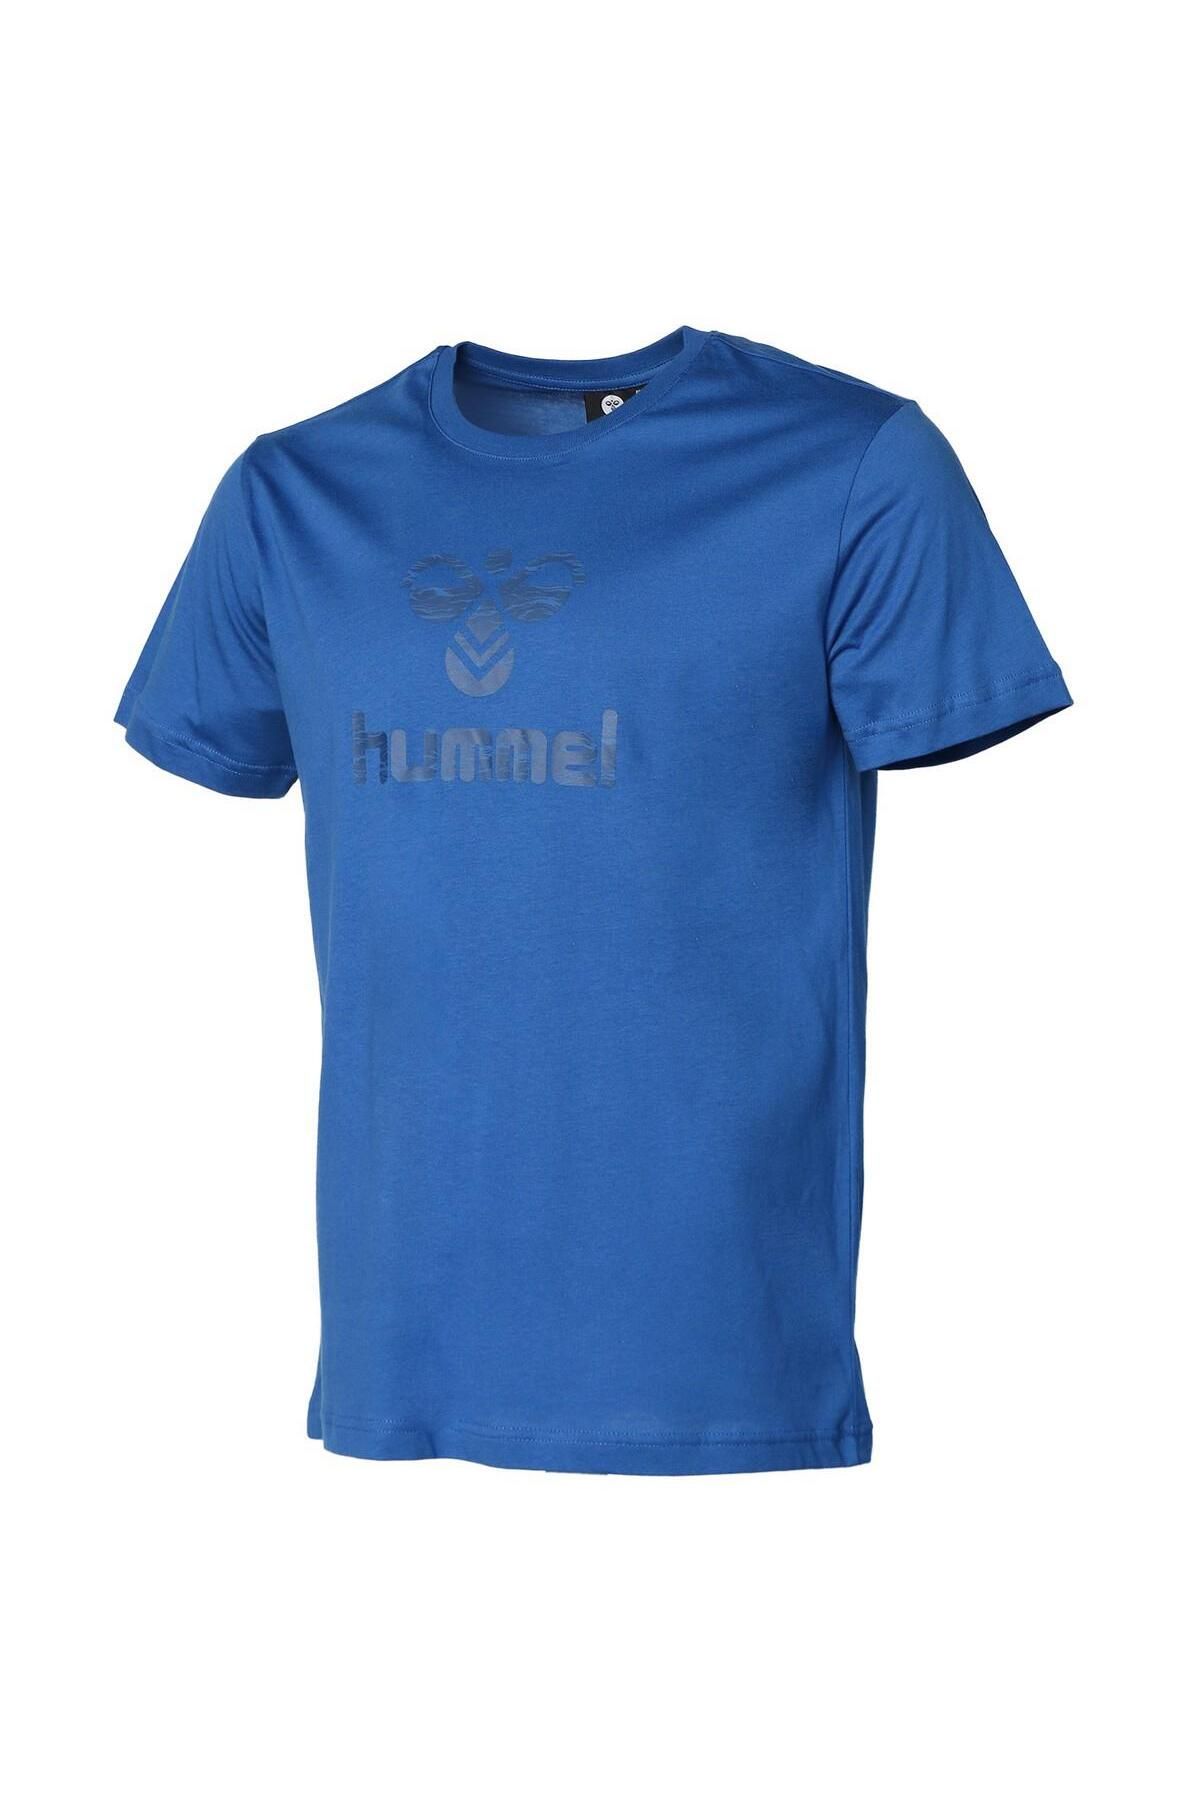 hummel 911666-7045 Huxley Erkek T-shirt